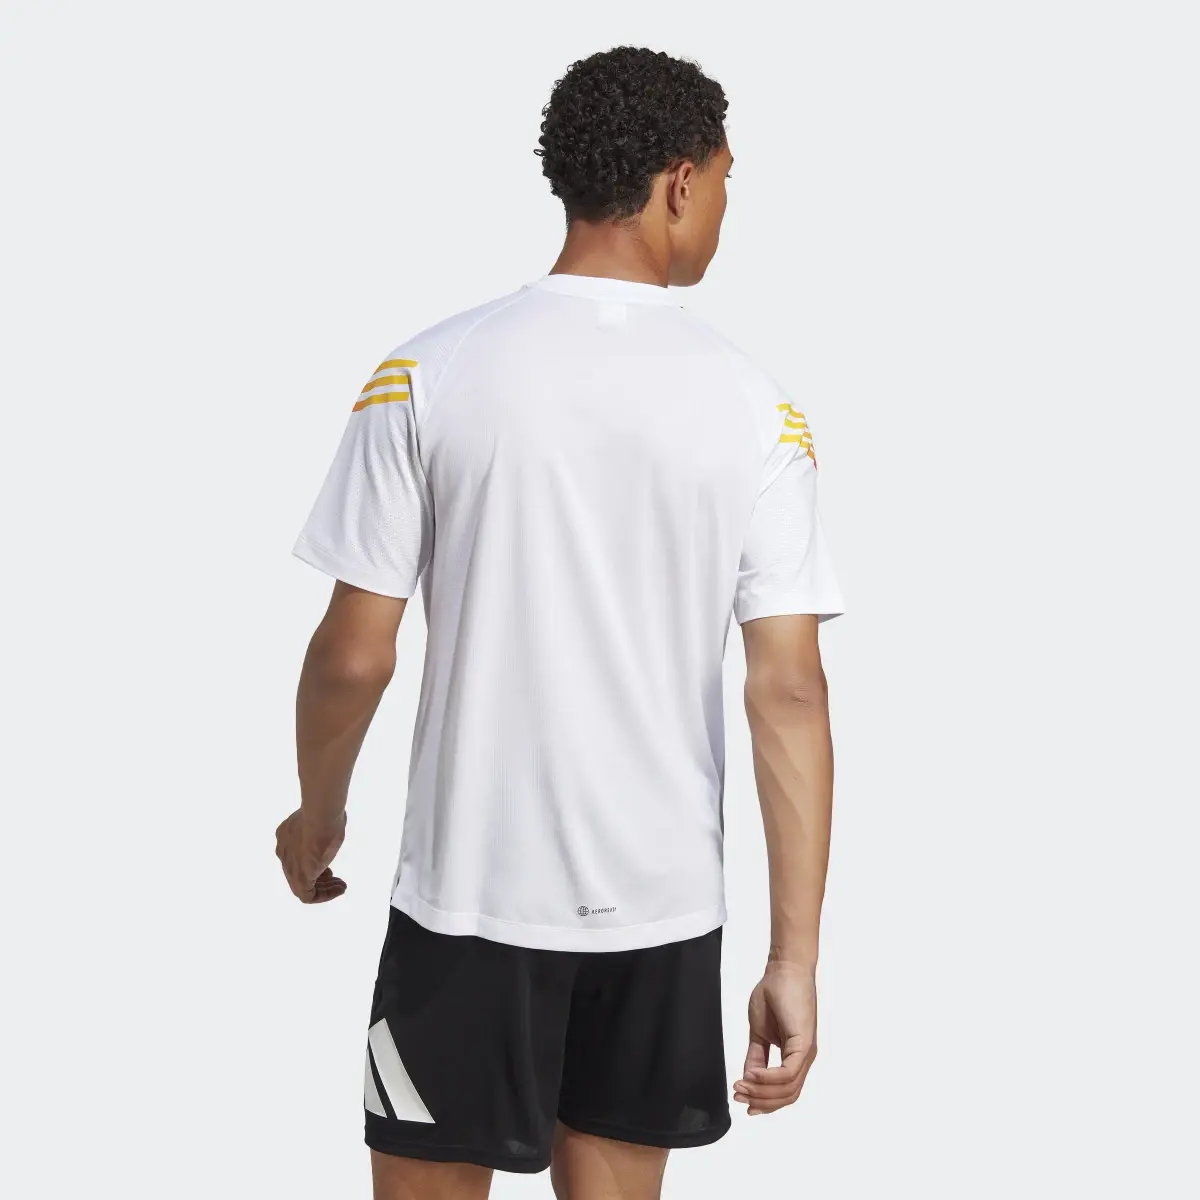 Adidas Train Icons 3-Stripes Training T-Shirt. 3